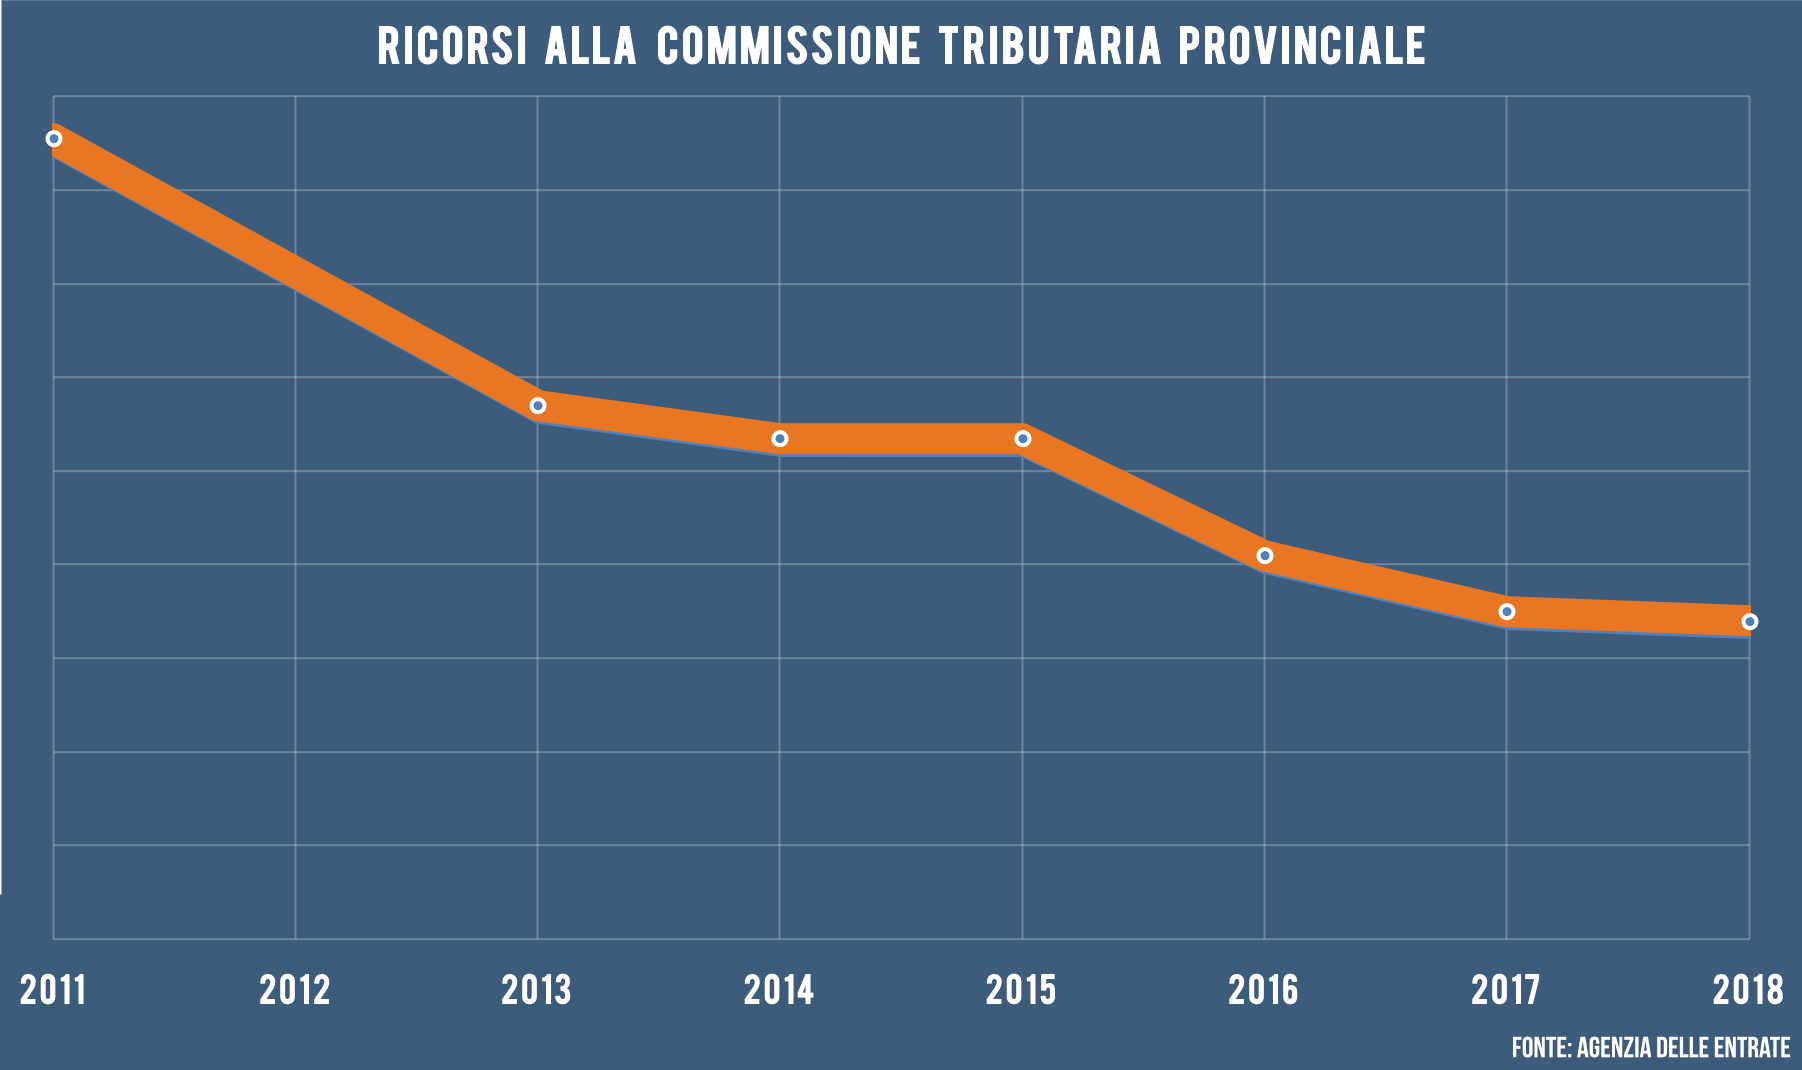 Ricorsi alla Commissione Tributaria provinciale 2011-2018